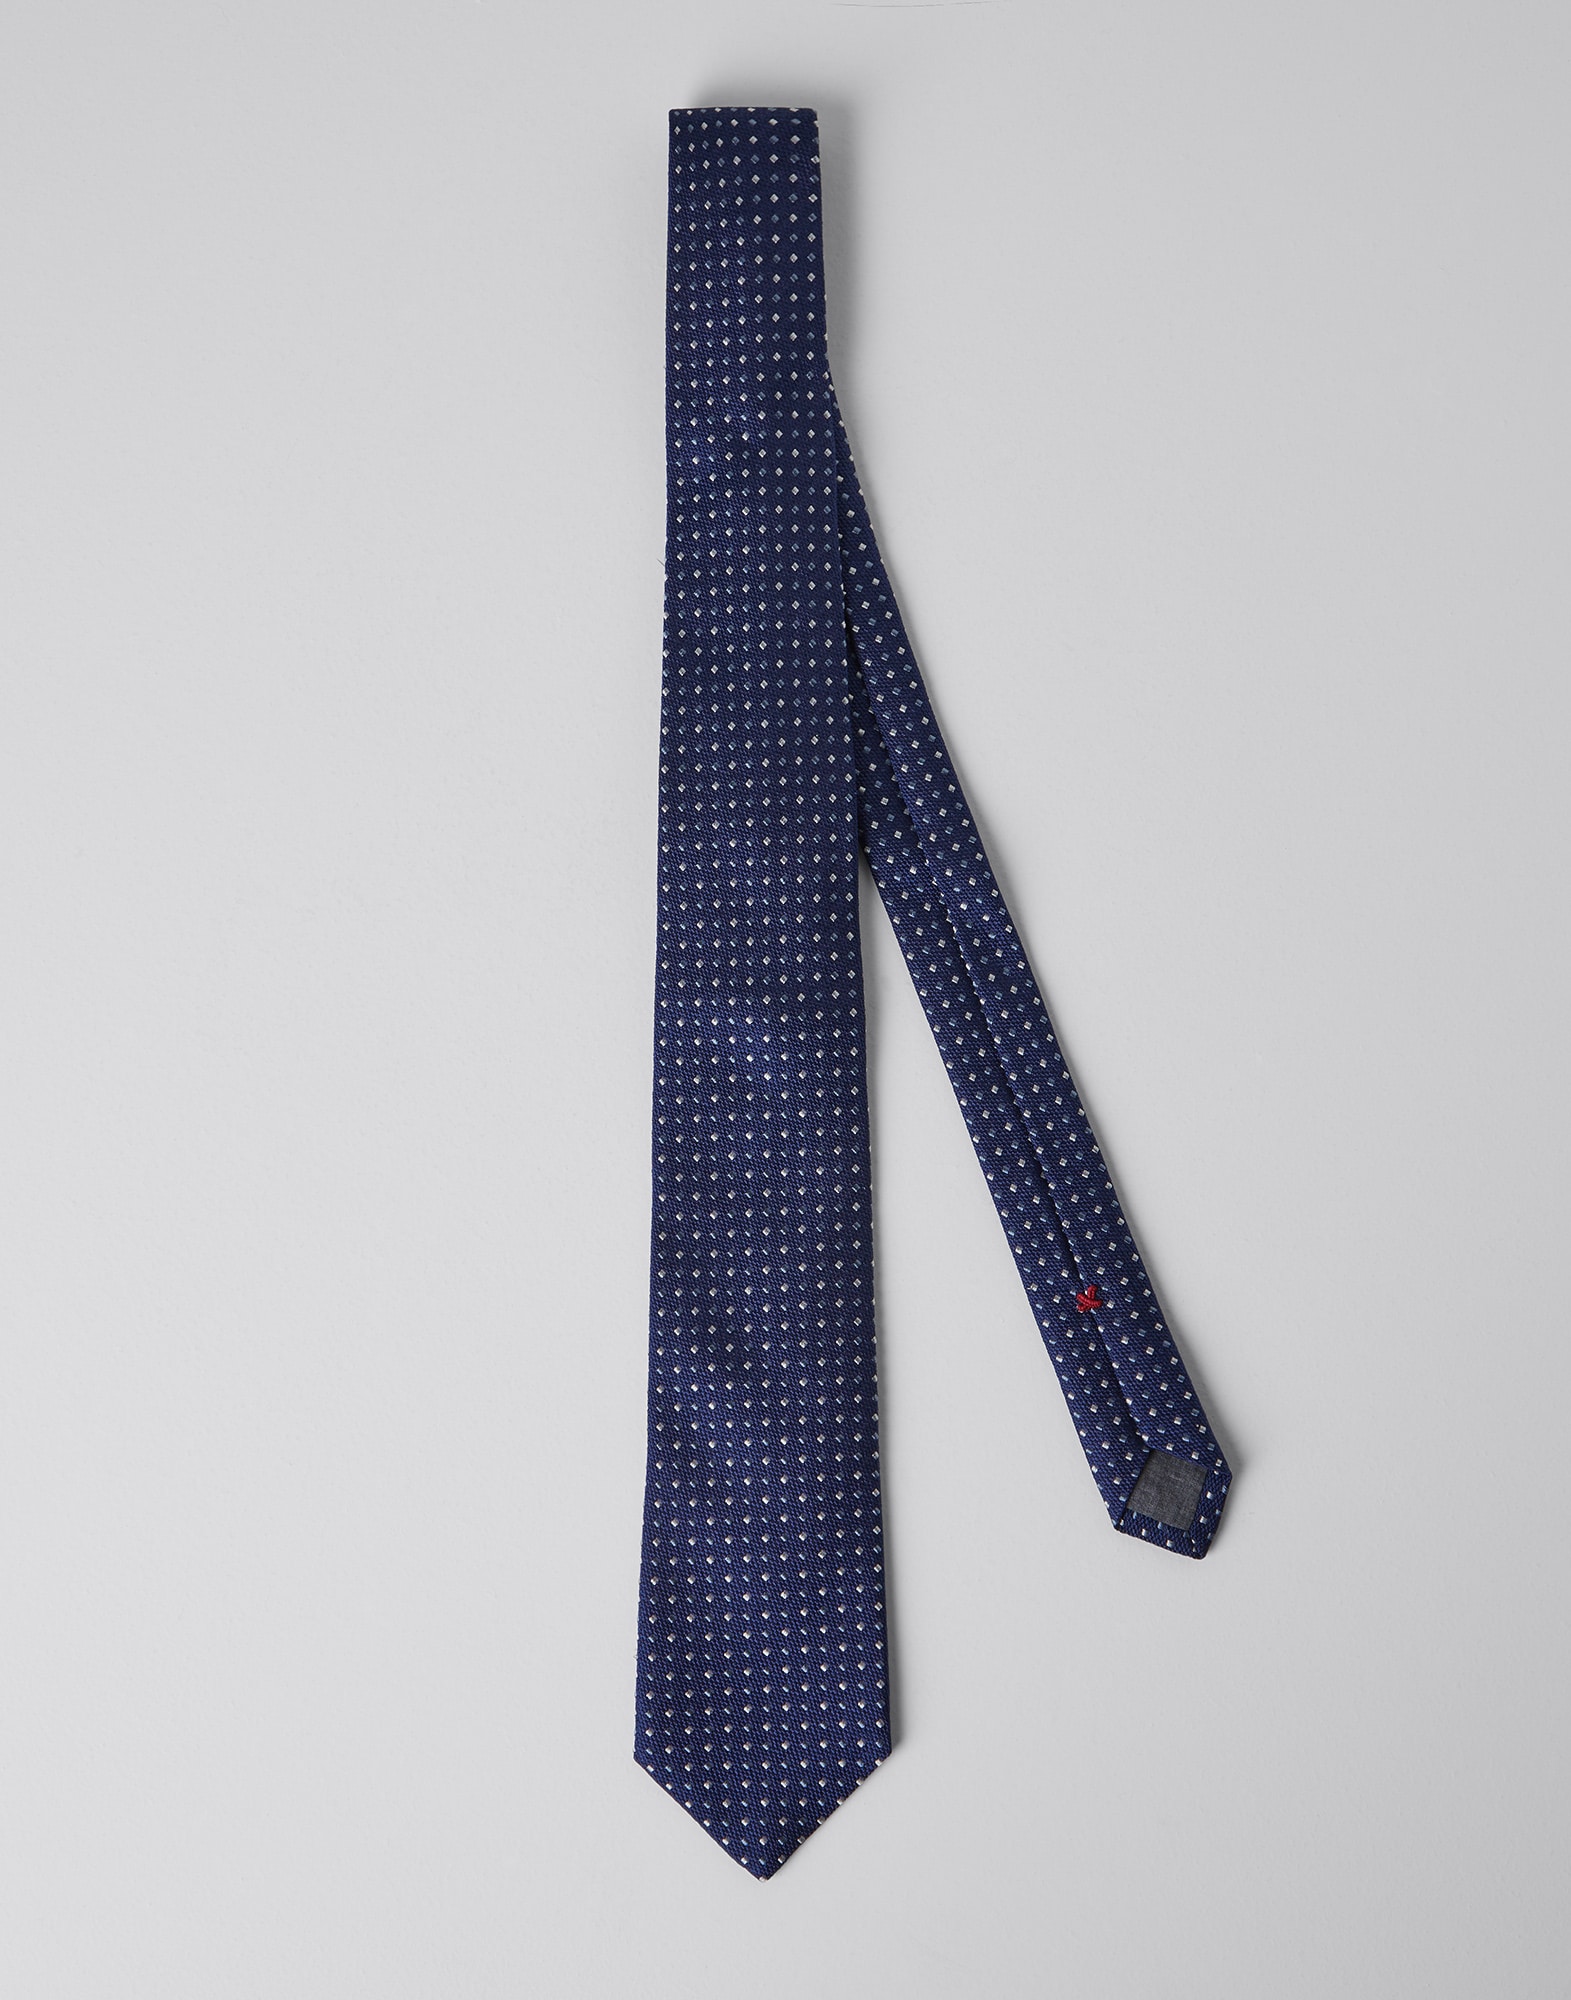 Necktie with dot pattern